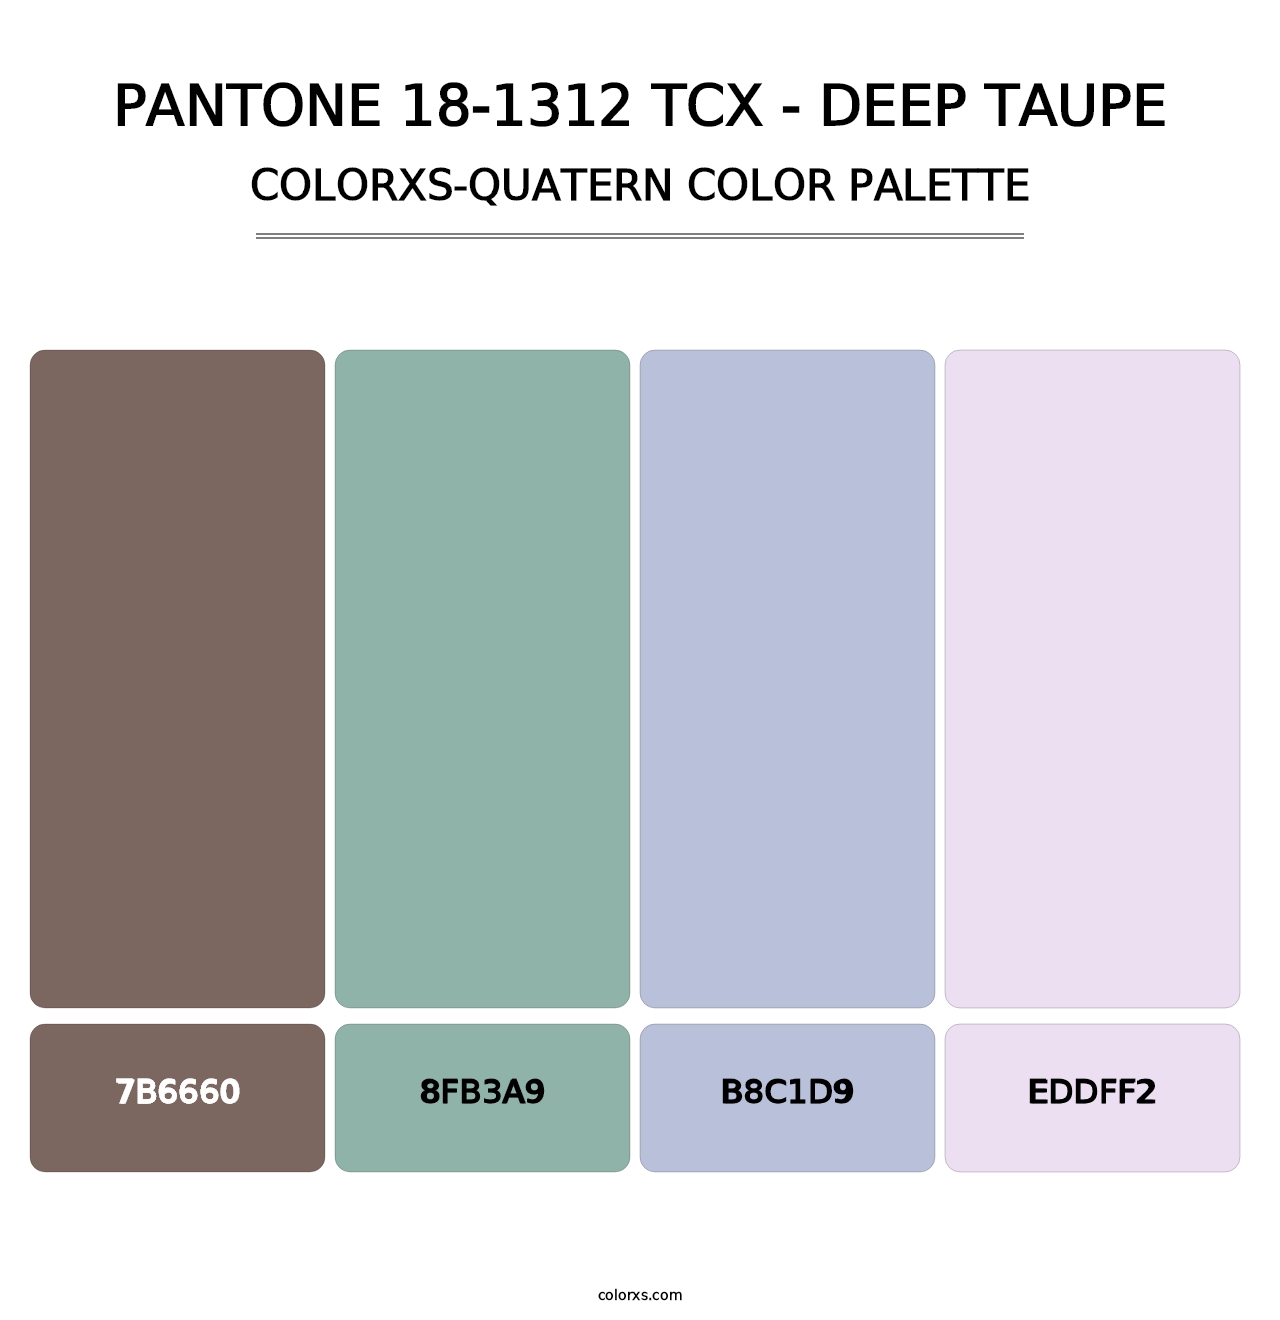 PANTONE 18-1312 TCX - Deep Taupe - Colorxs Quatern Palette